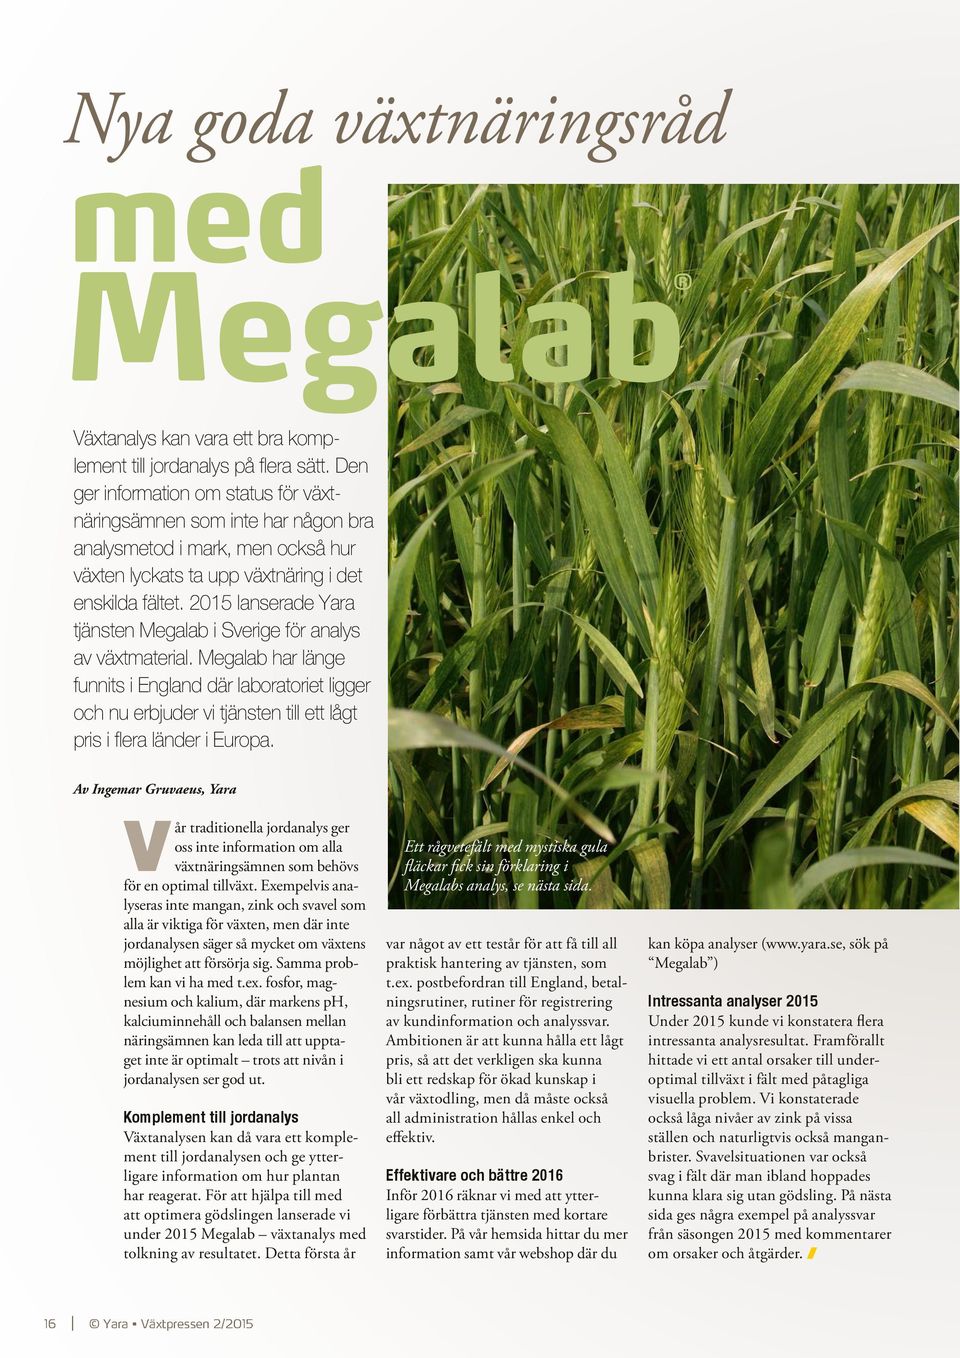 2015 lanserade Yara tjänsten Megalab i Sverige för analys av växtmaterial.